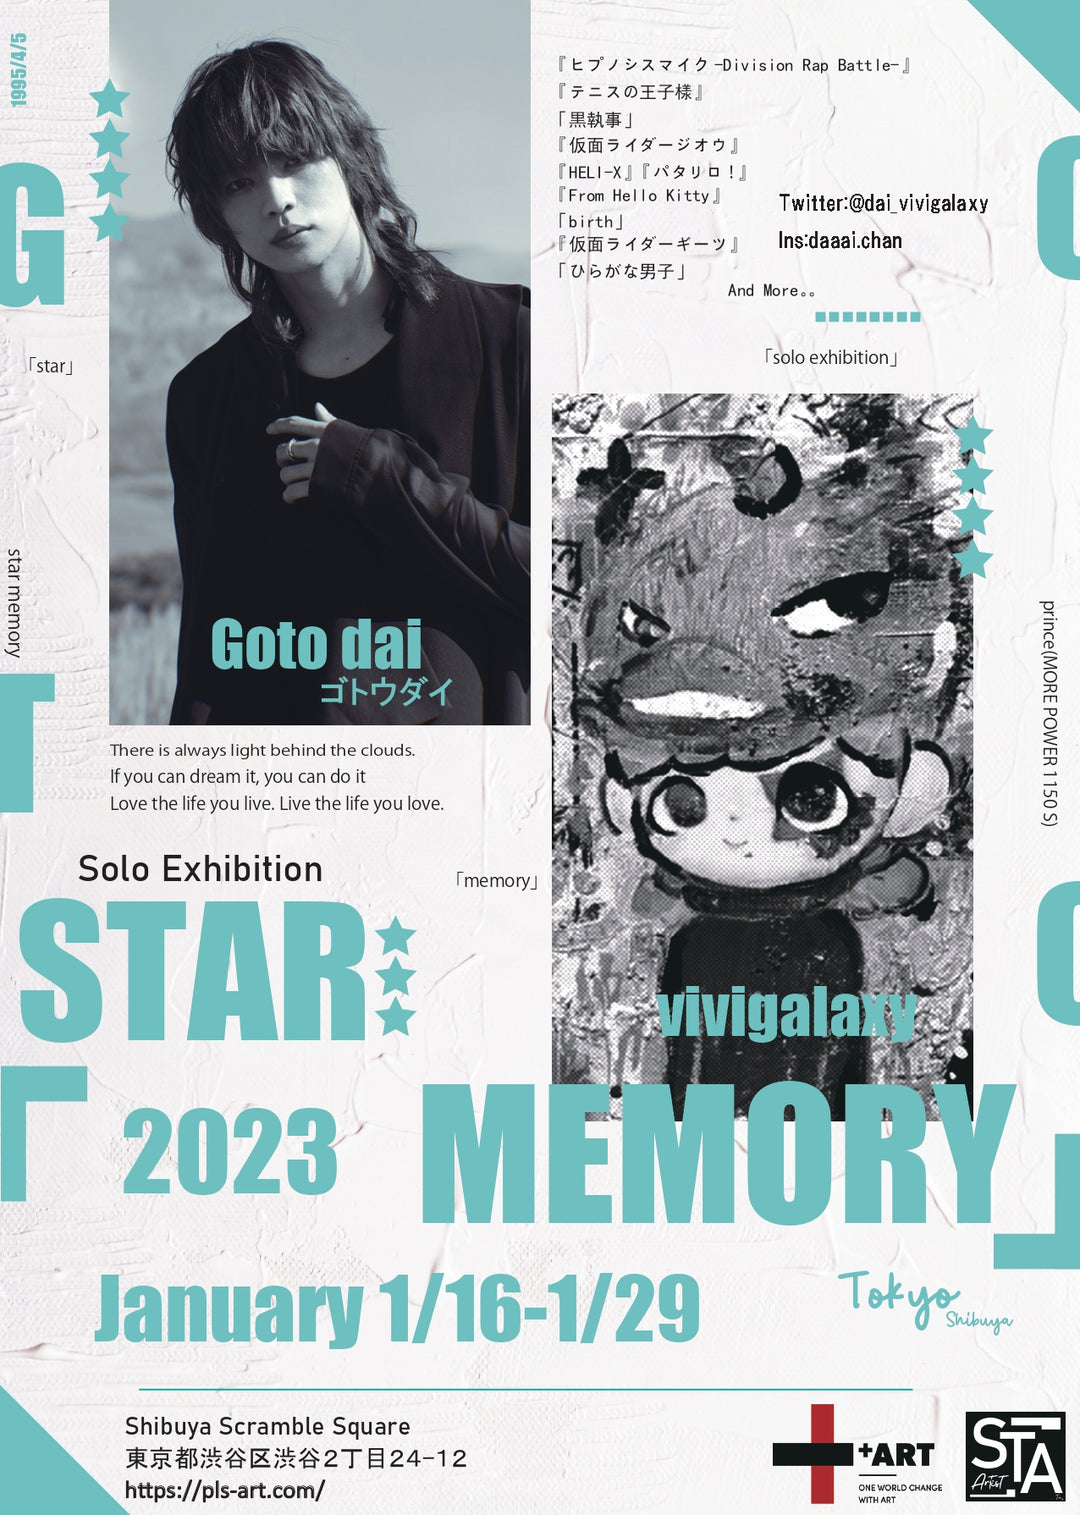 俳優 / 作家のゴトウダイによる「Solo Exhibition STAR MEMORY」開催のお知らせ